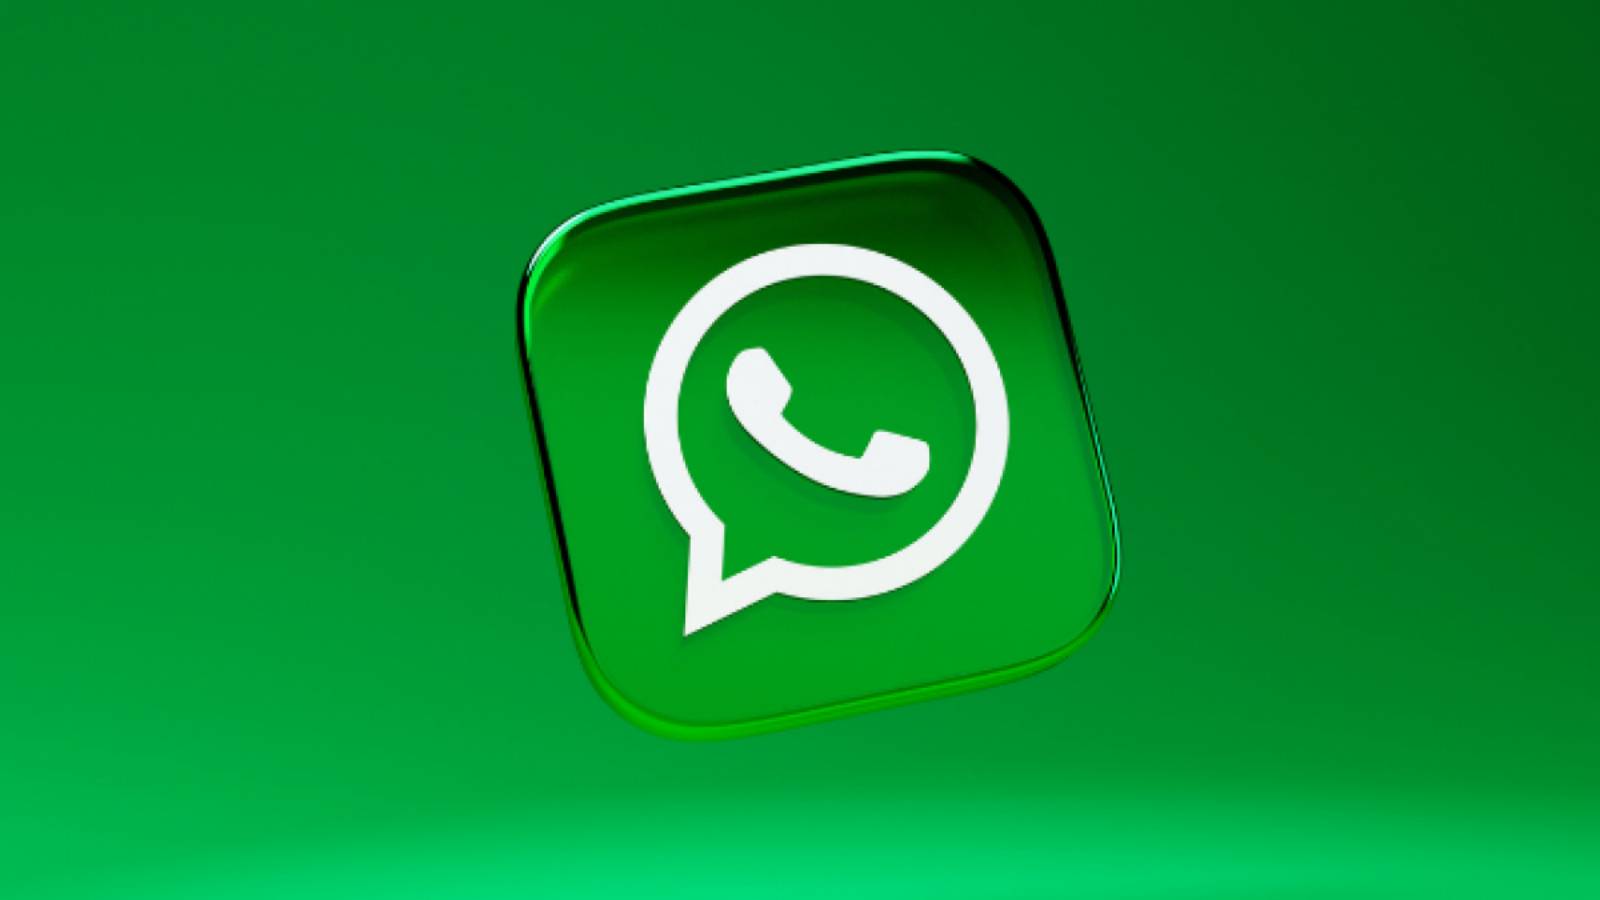 WhatsApp SPARGE Barierele, Schimbarea Neașteptată din iPhone și Android